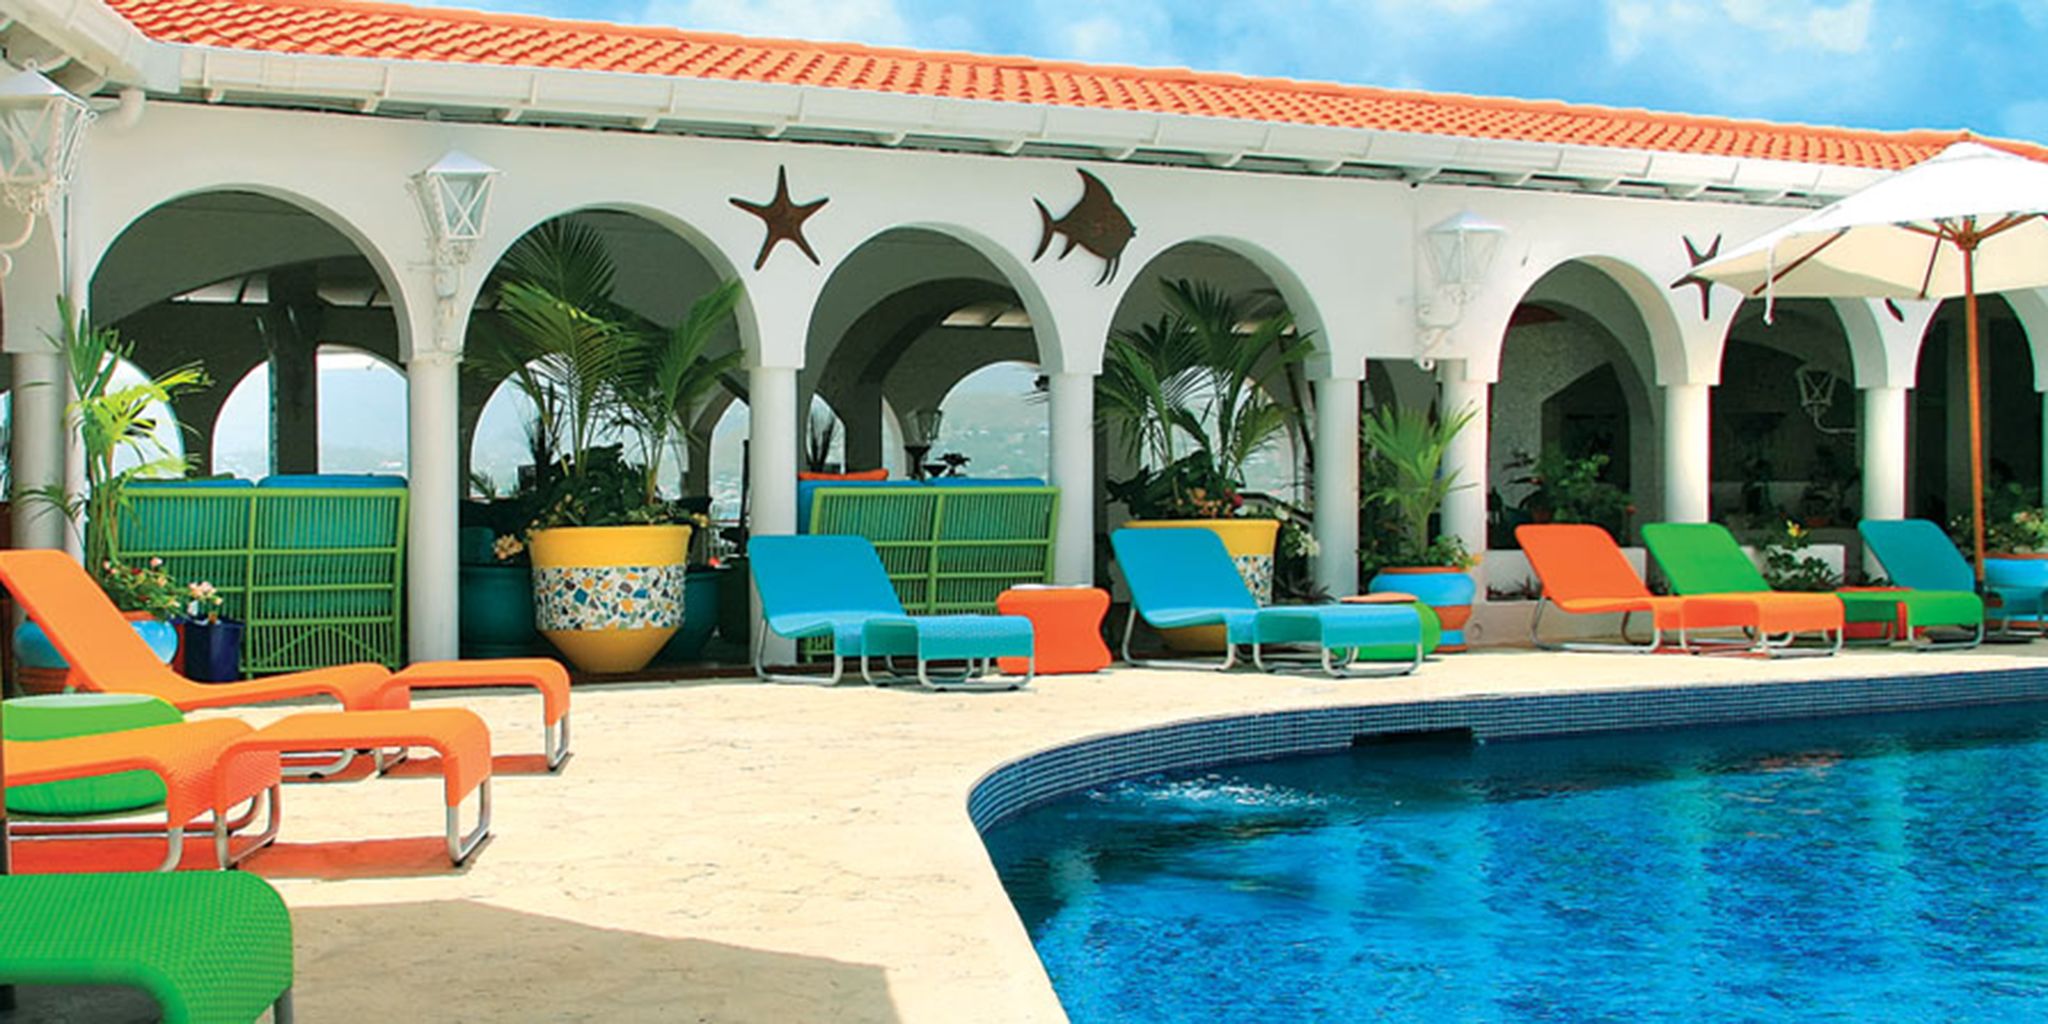 Mount Cinnamon Resort & Beach Club in Saint Georges, Grenada